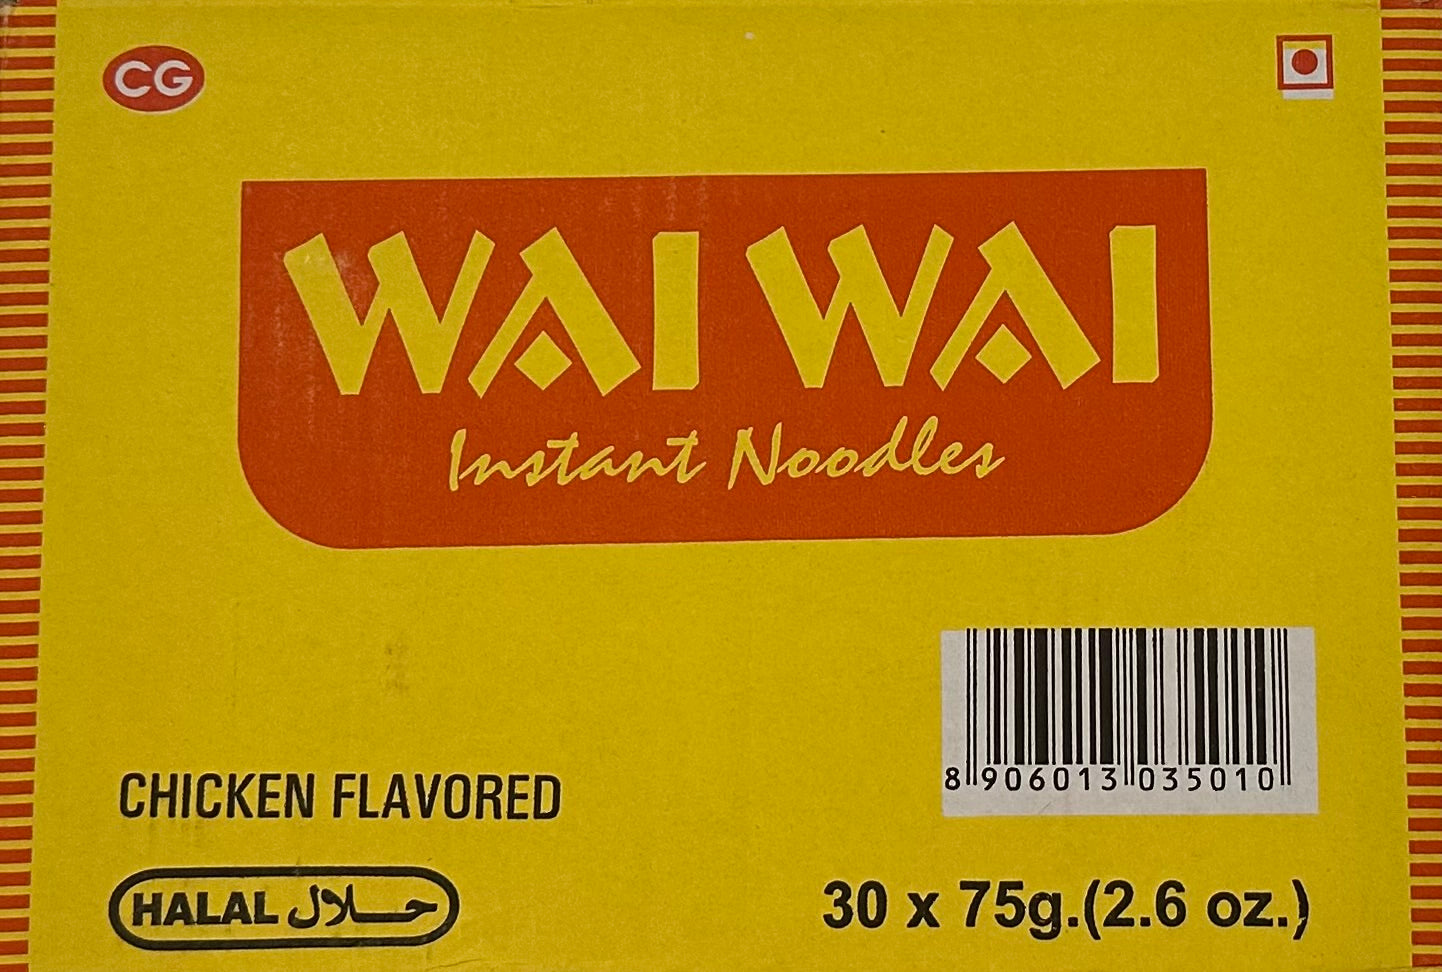 Wai Wai Chicken (Halal)